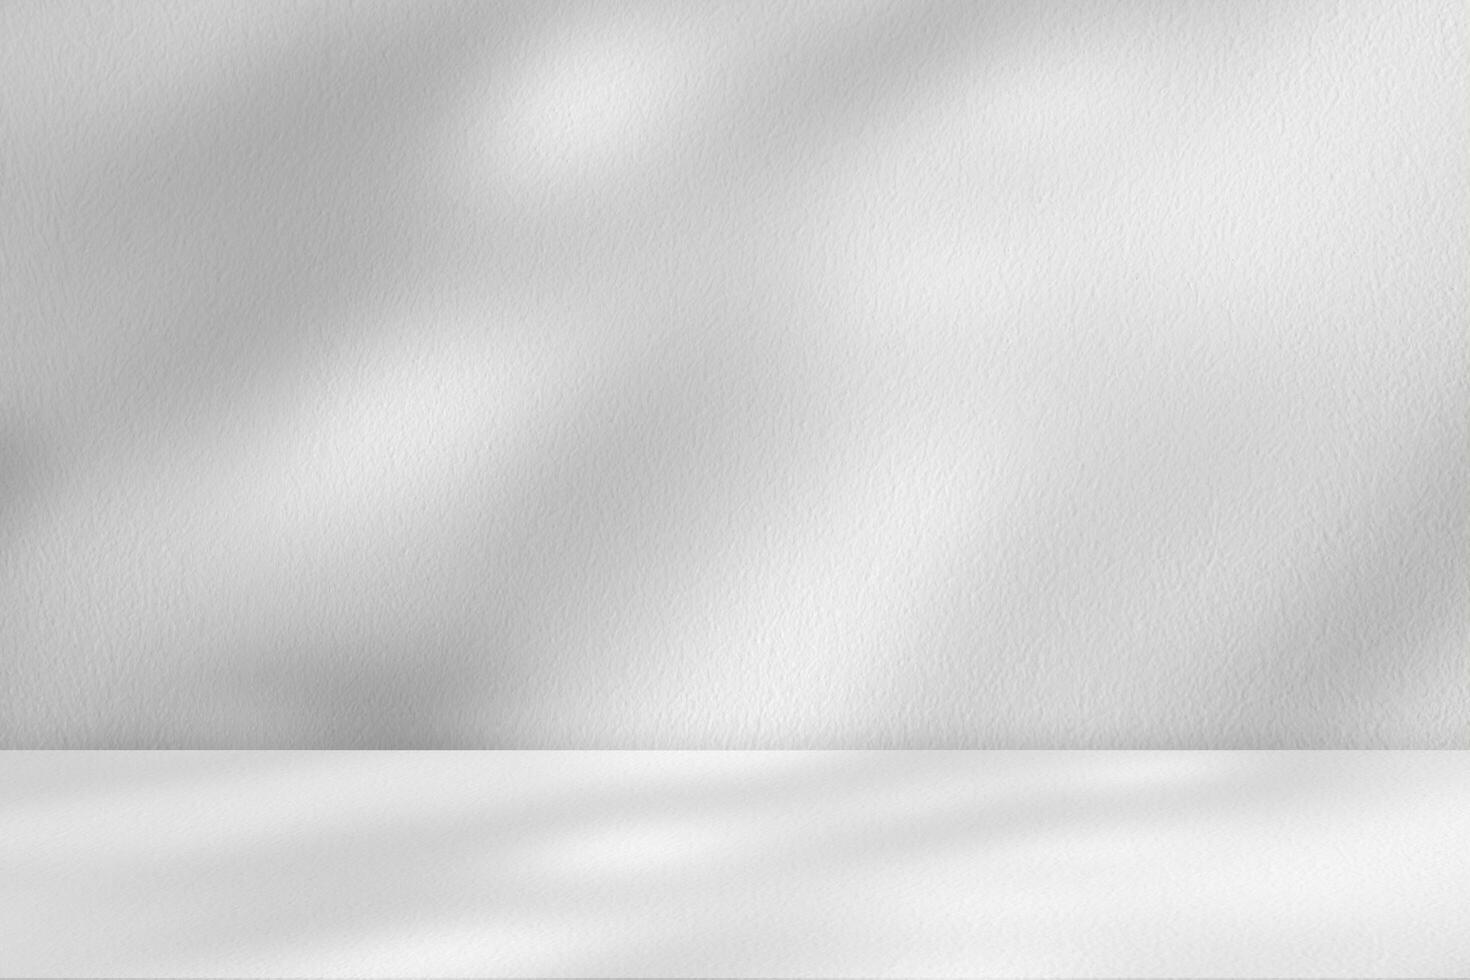 studio sfondo, foglie ombra con raggio di sole riflessione su grigio calcestruzzo parete sfondo, vuoto bianca studio camera con astratto leggero su cemento pavimento, fondale Schermo per Prodotto presentazione foto